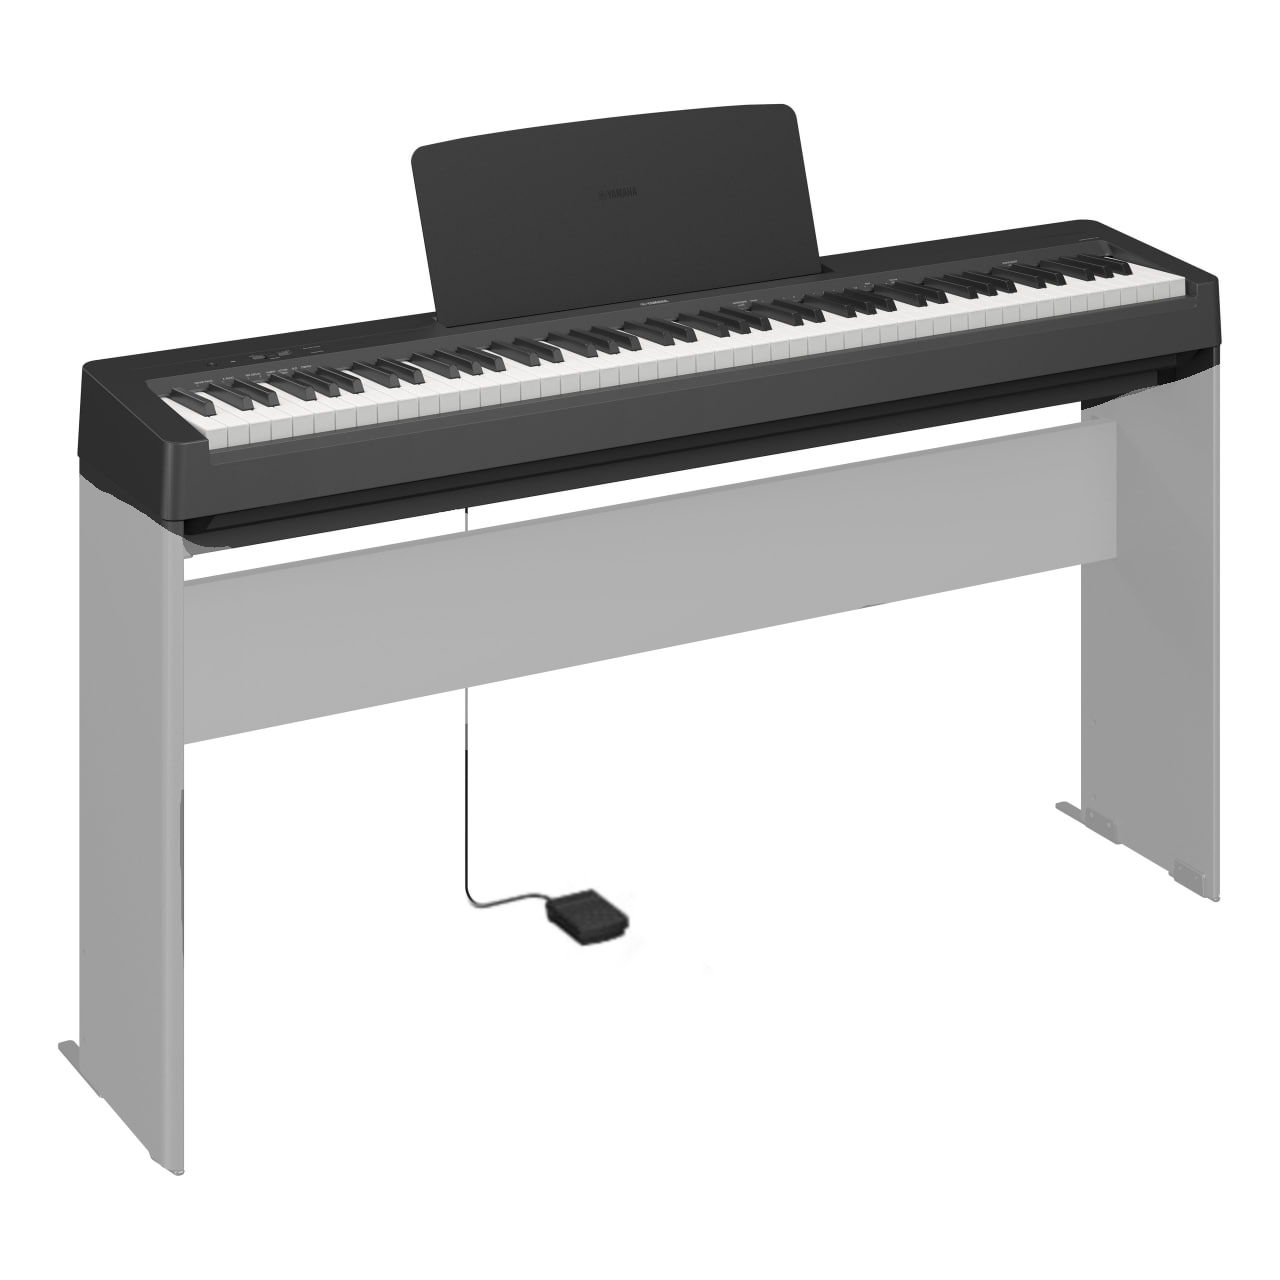 Цифровые пианино Yamaha P-143B любимые мелодии и ритмы популярная музыка для фортепиано